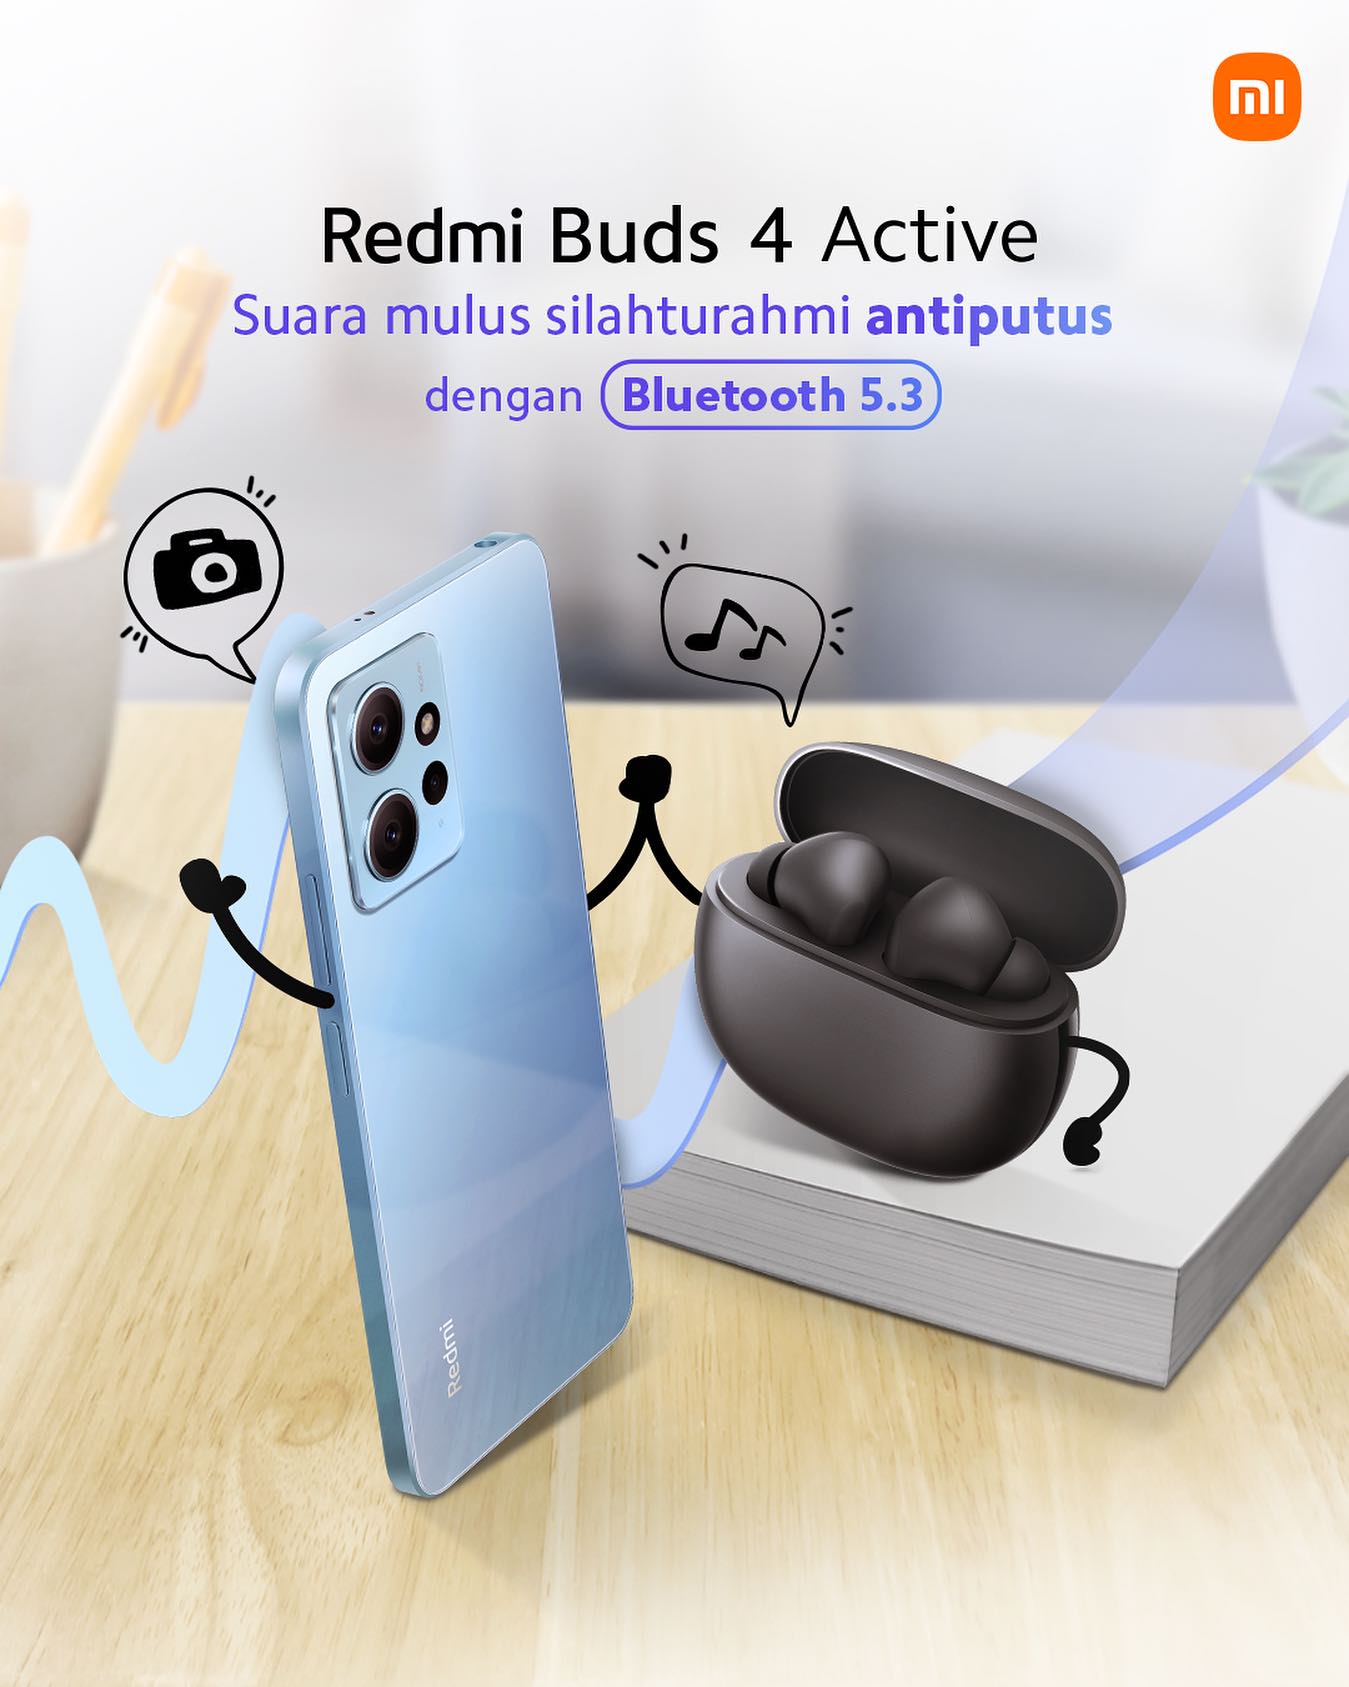 Tws xiaomi buds 4 active. Xiaomi Redmi Buds 4 Active. Xiaomi Redmi Buds 4 Active сенсор. Xiaomi Buds 4 Active коробка. Redmi Buds 4 Active коробка.